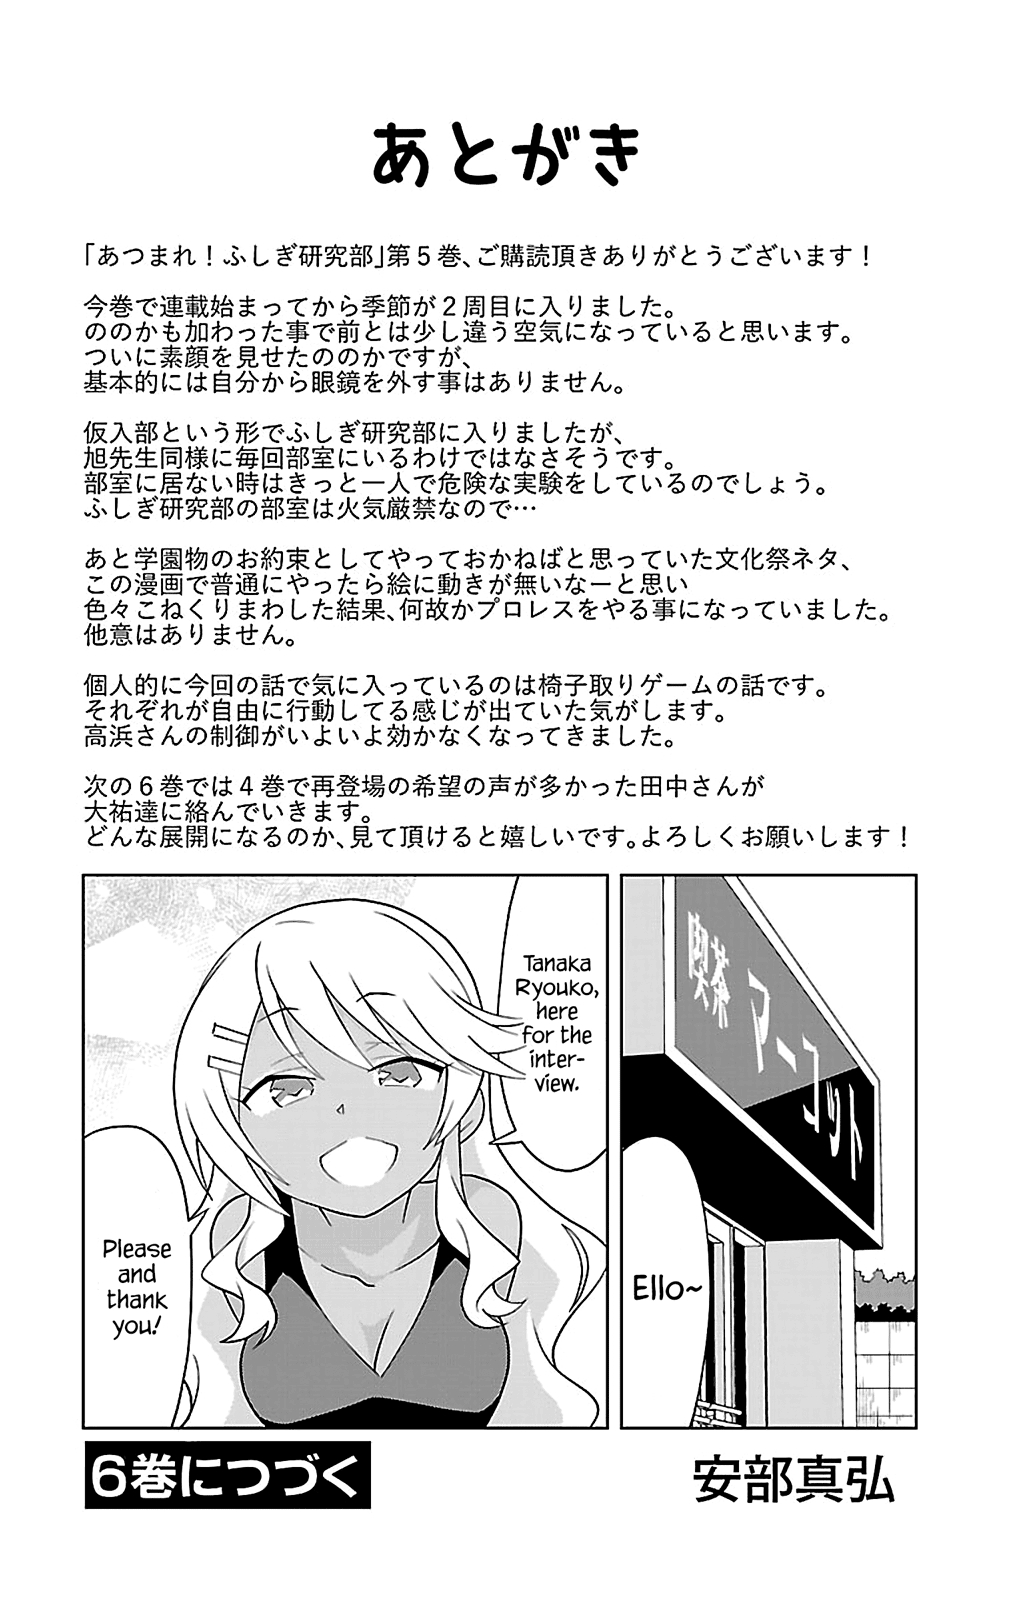 Atsumare! Fushigi Kenkyu bu Vol. 5 Ch. 94 The Mystery of Stalls